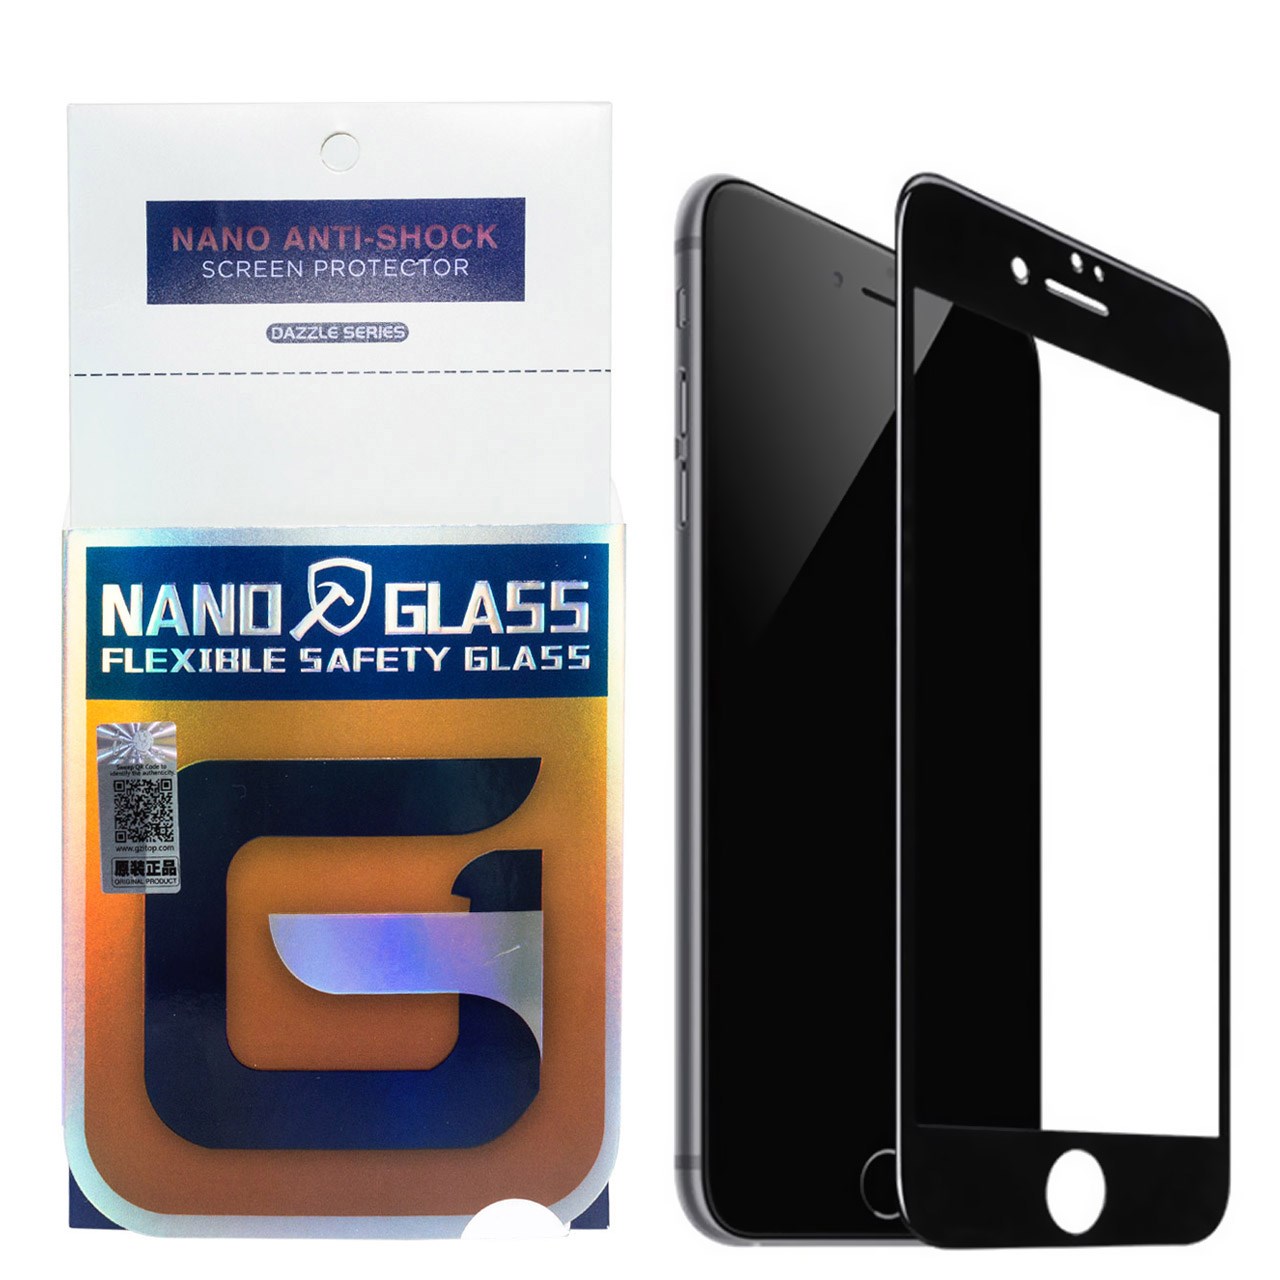 محافظ صفحه نمایش نانو گلس مدل 5D مناسب برای گوشی موبایل اپل آیفون 7Plus/8 Plus